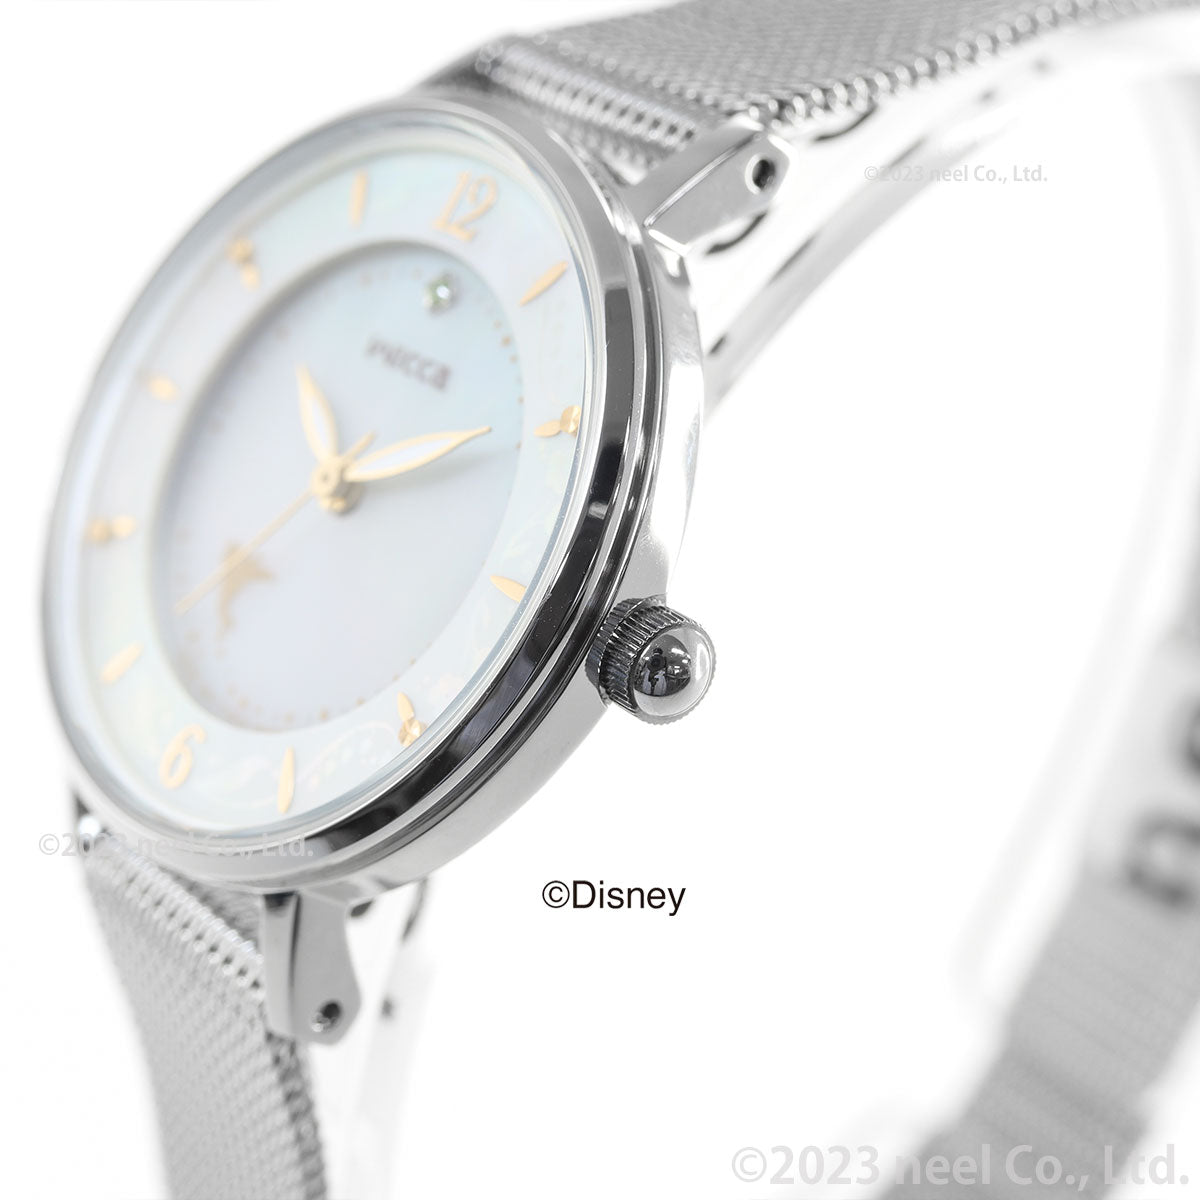 シチズン ウィッカ CITIZEN wicca ウォルト・ディズニー・カンパニー創立100周年 限定 Disney100テーマ 「ティンカー・ベル」 デザインモデル ソーラーテック 腕時計 KP3-414-11